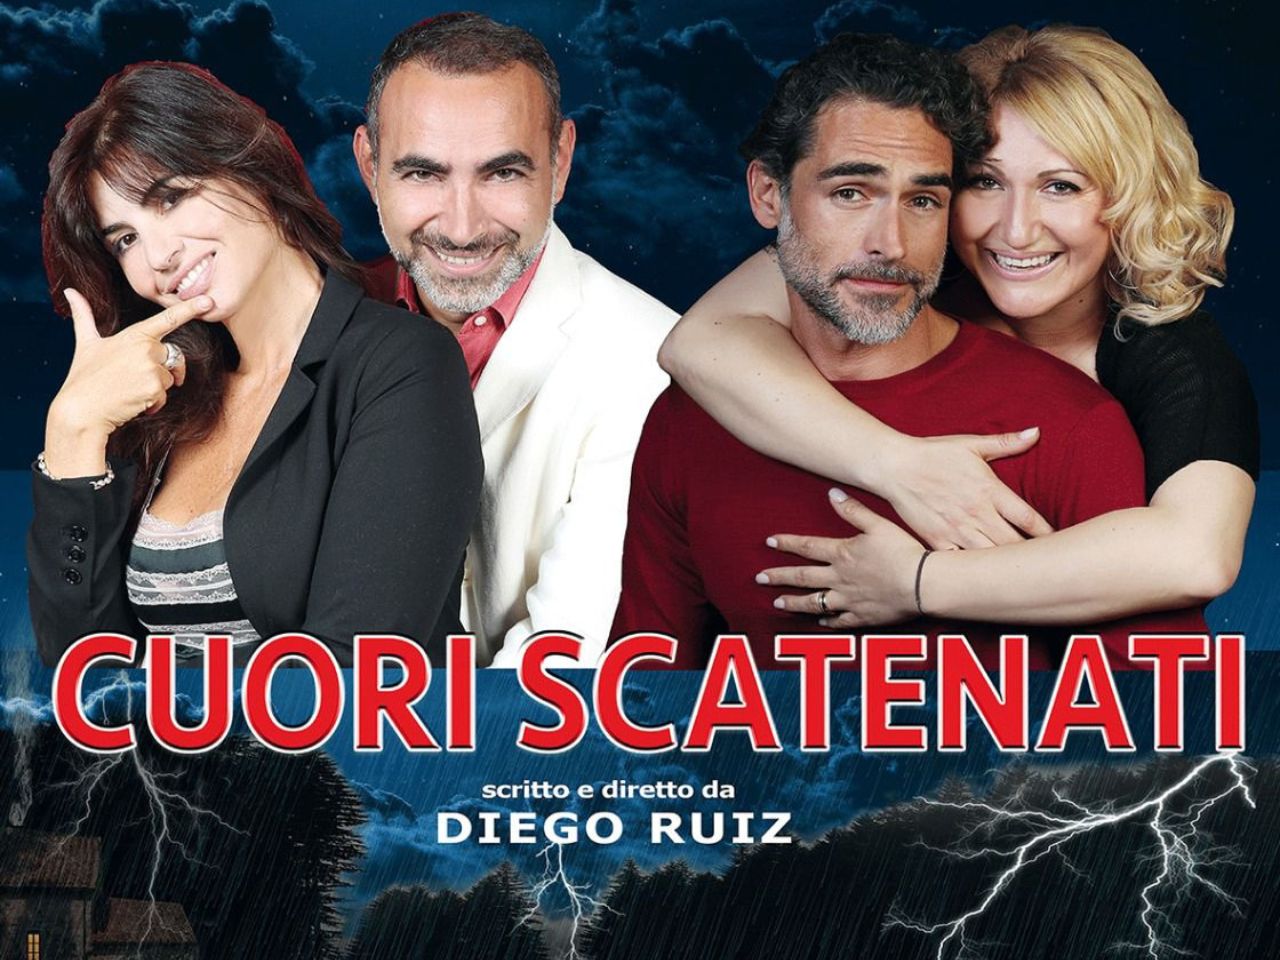 Cuori scatenati: il Teatro La Nuova Fenice di Osimo ospita la commedia con Sergio Muniz